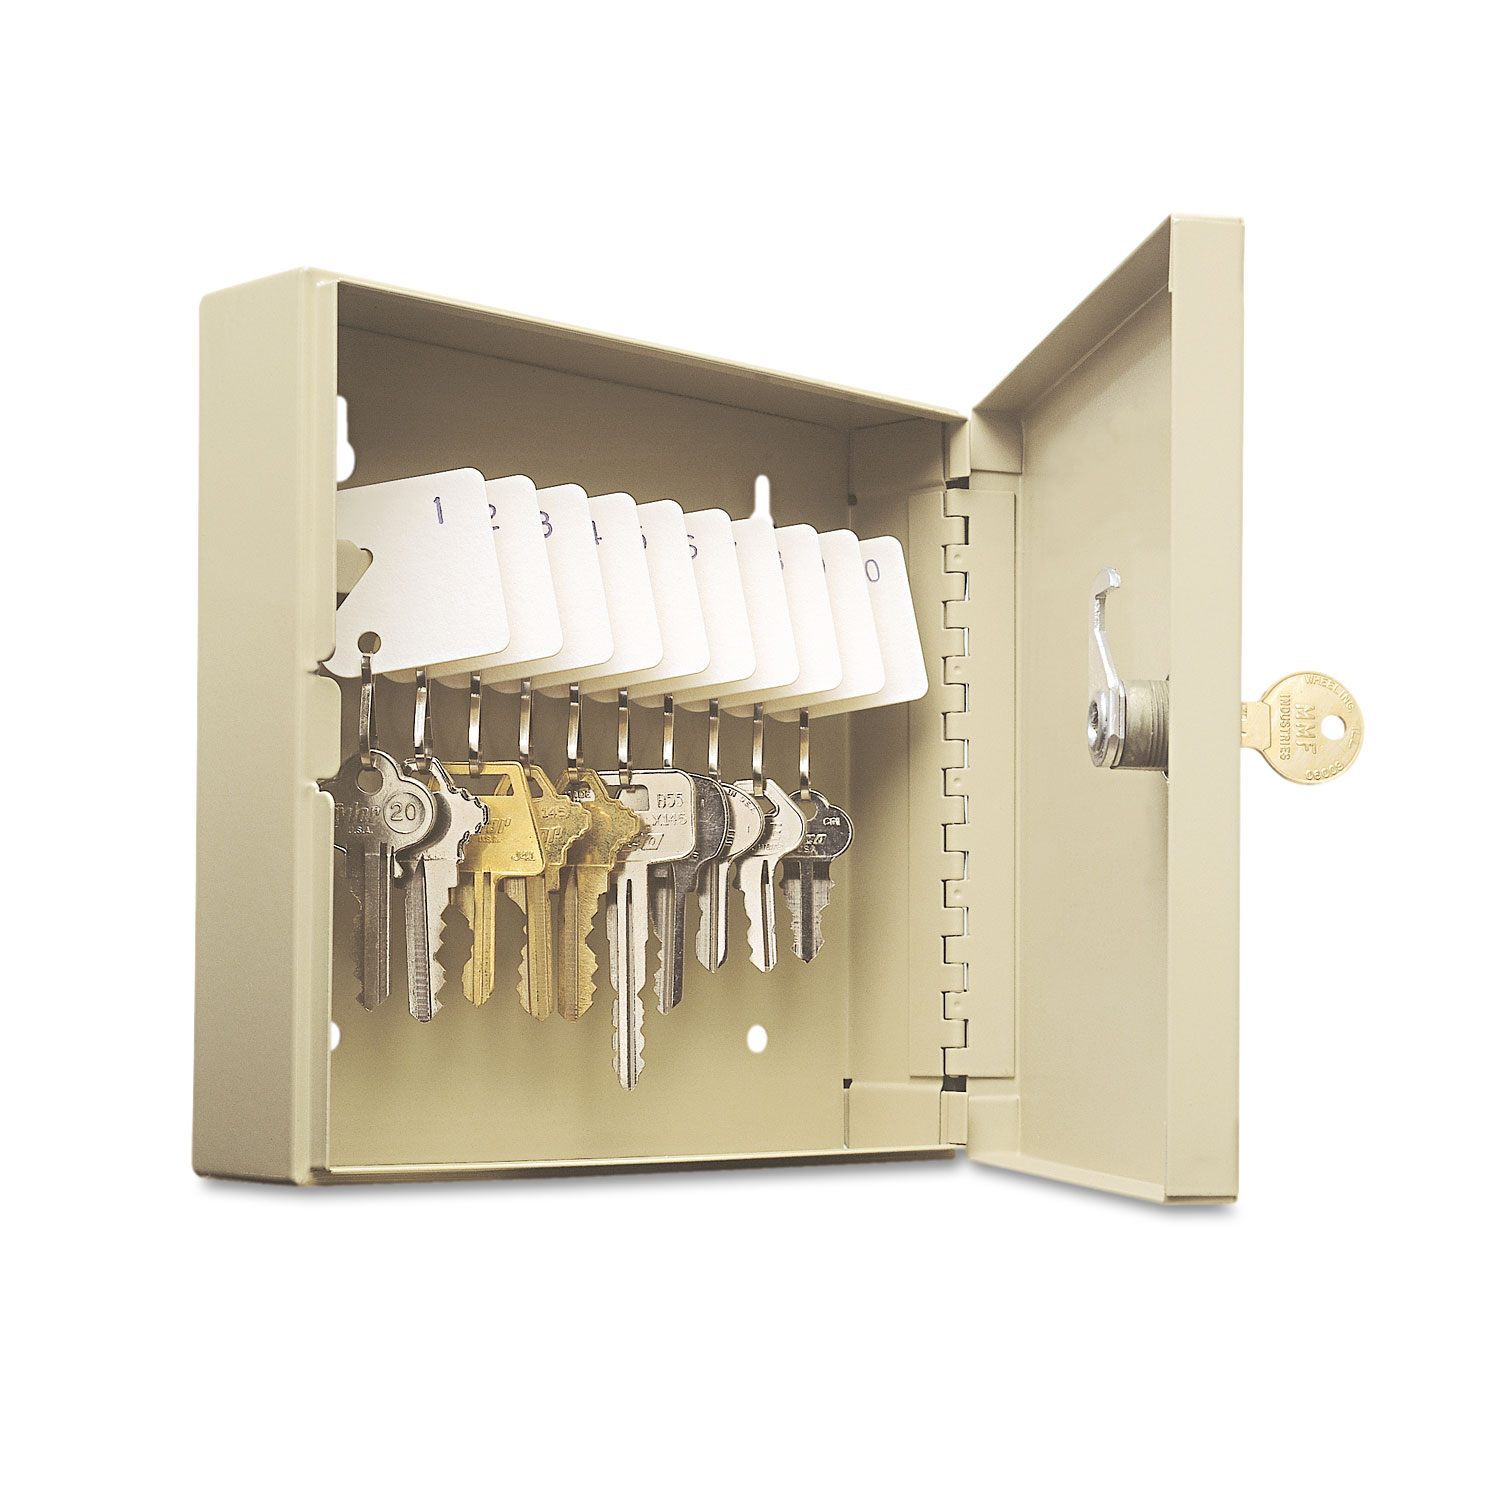  SteelMaster 201901003 Uni-Tag Key Cabinet, 10-Key, Steel, Sand, 6 7/8” x 2” x 6 3/4” (MMF201901003) 